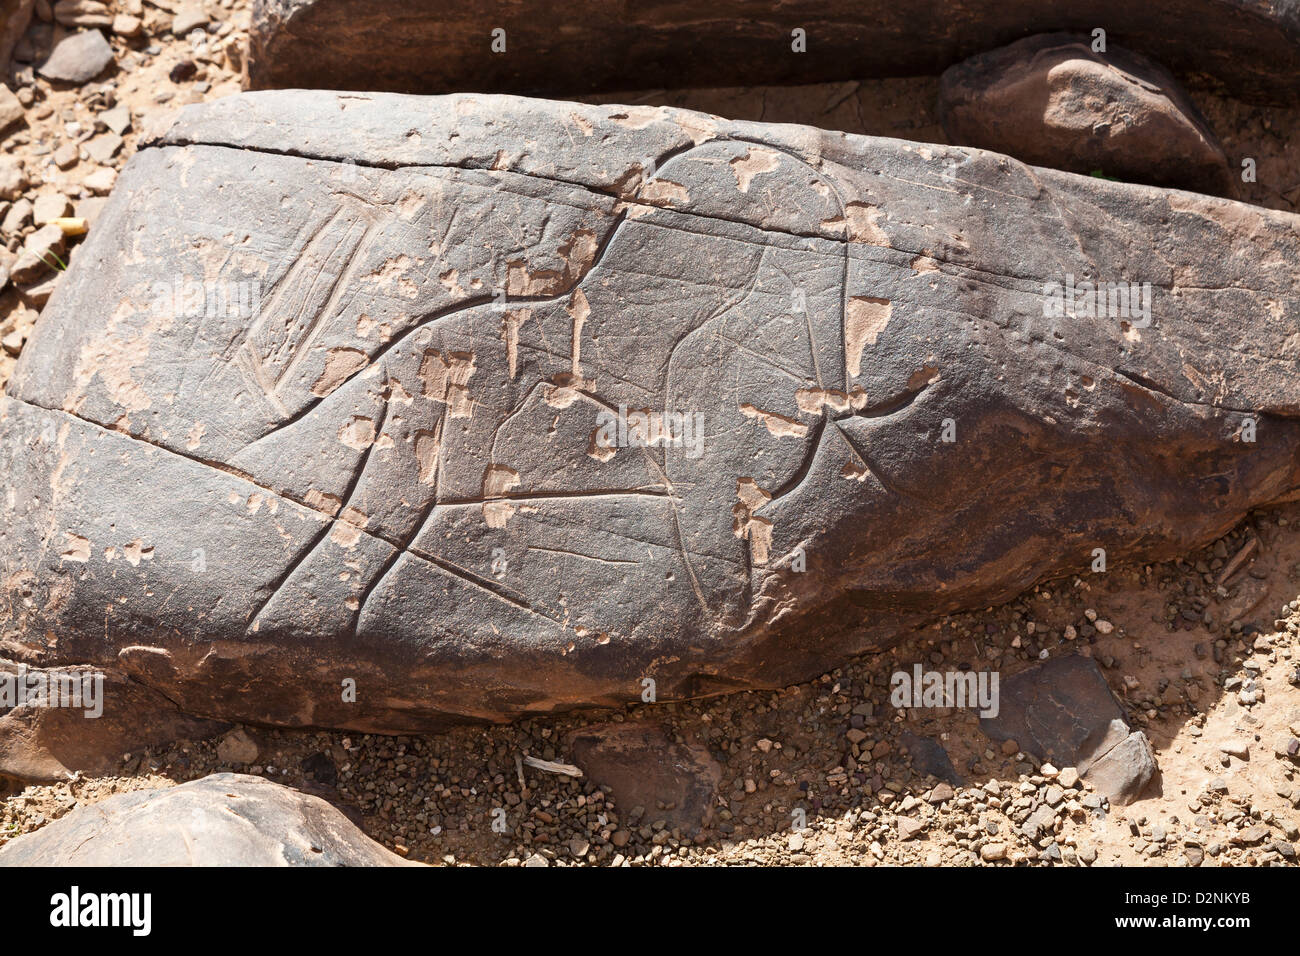 Sito d'arte rupestre preistorica Ait Ouazik, Marocco, Nord Africa Foto Stock